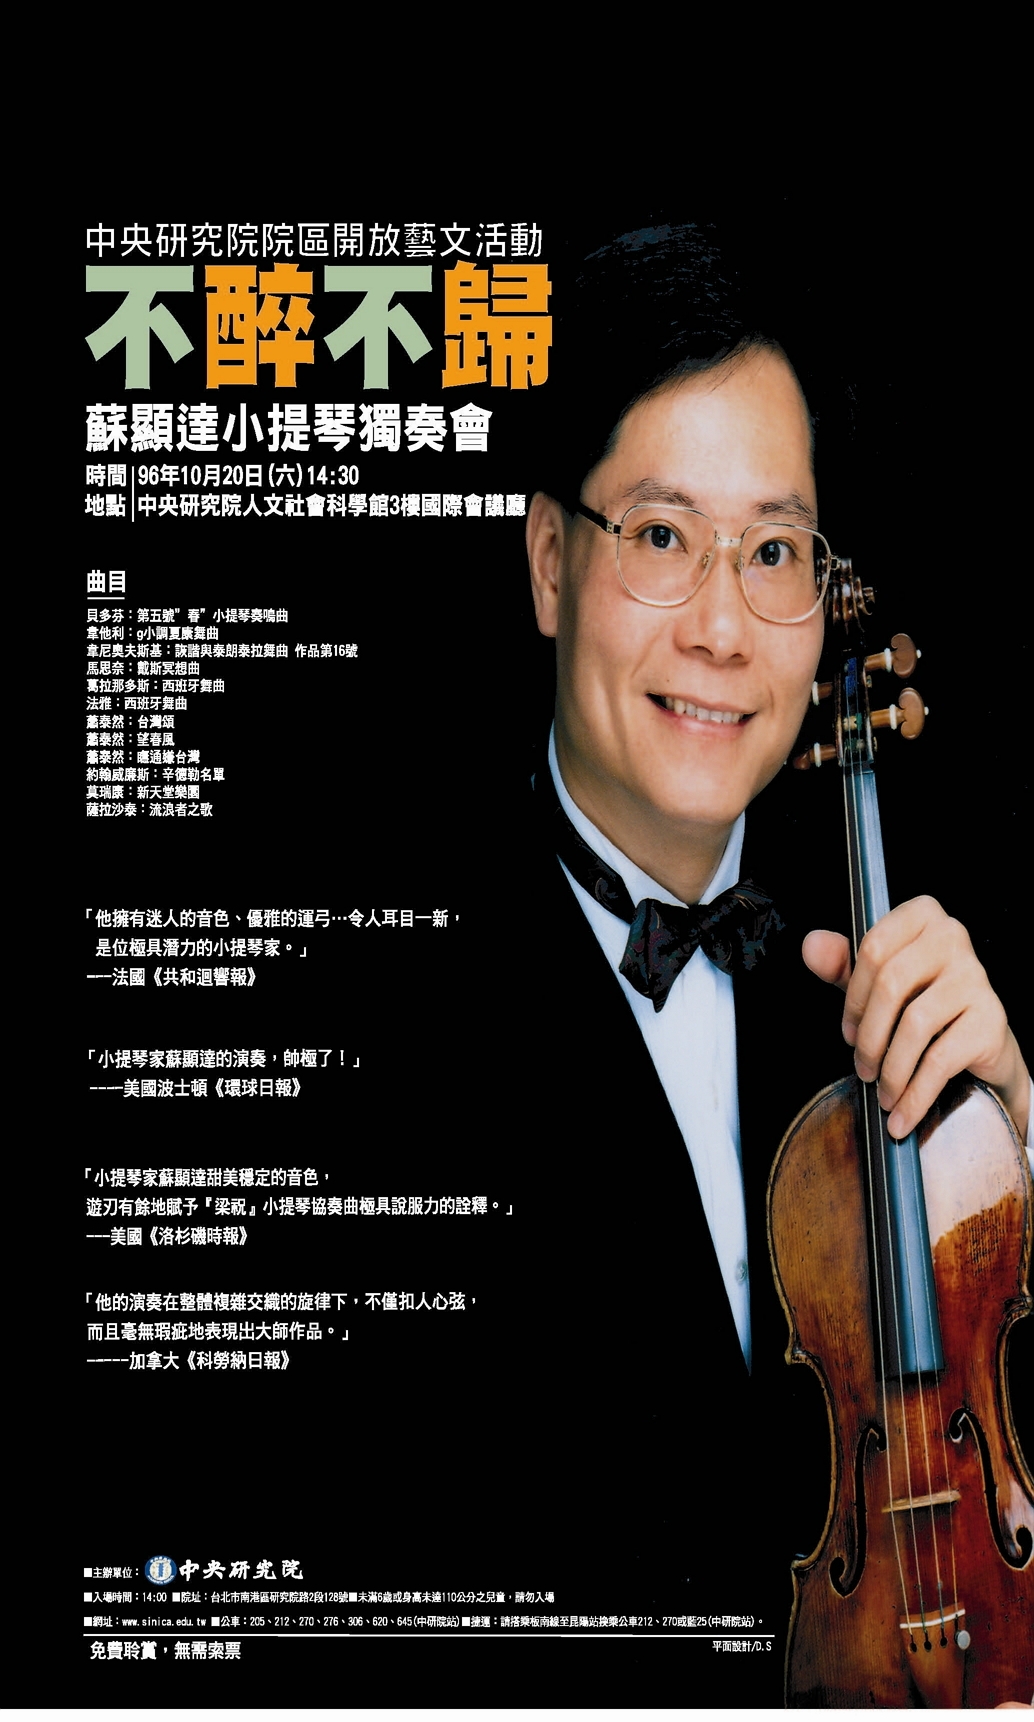 96院區開放藝文活動「不醉不歸─蘇顯達小提琴小品音樂會」